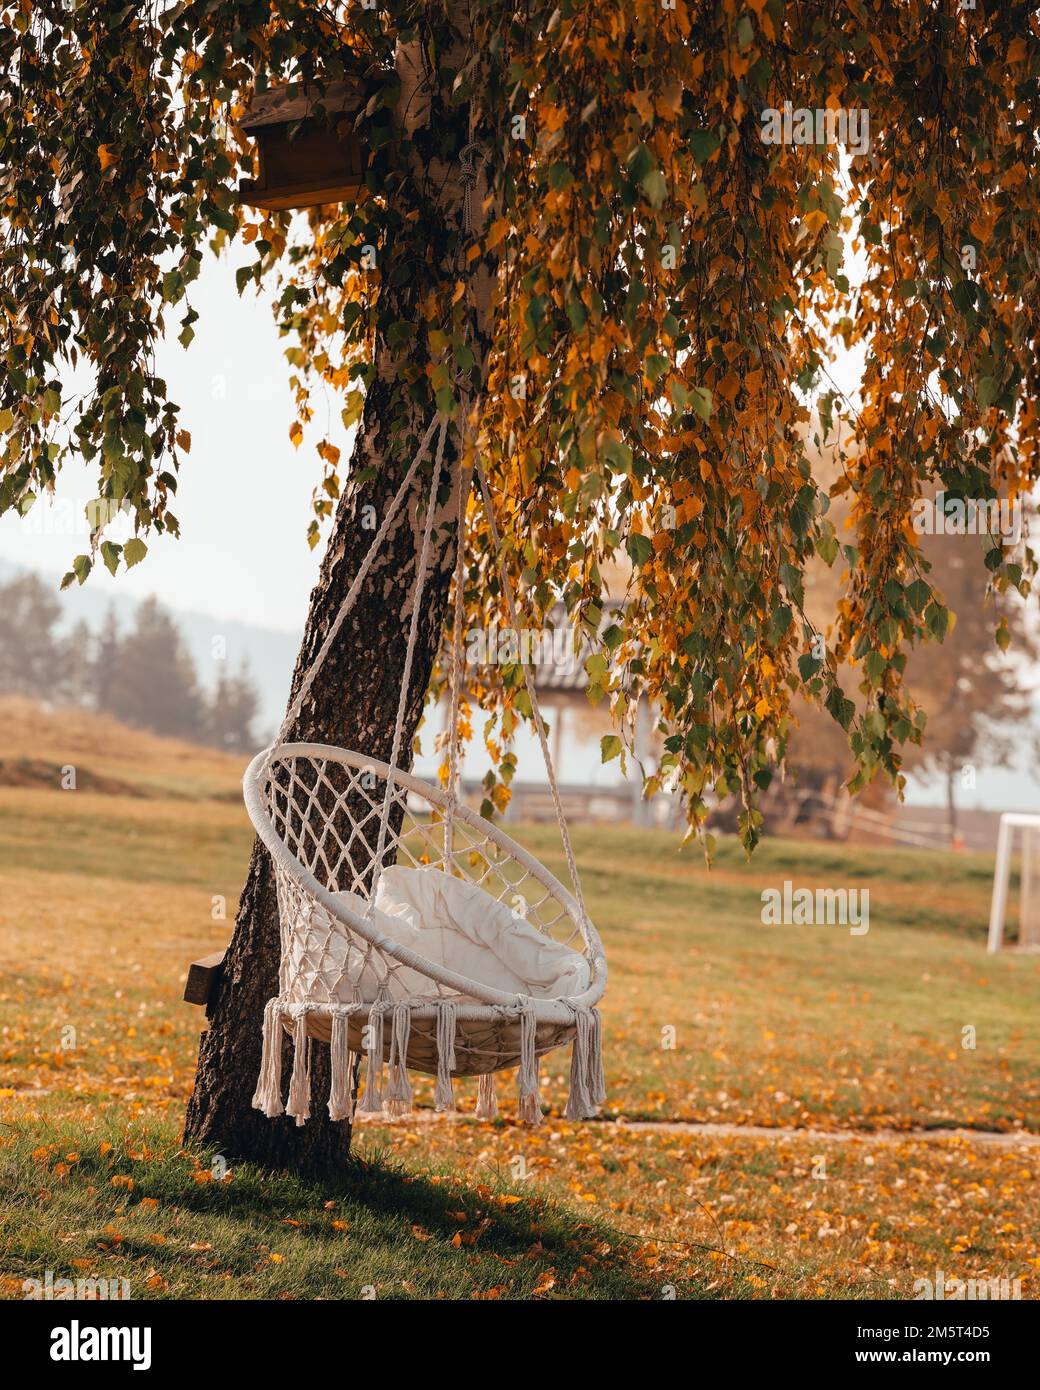 Une verticale d'une chaise hamac de sorbus macrame, balançoire accrochée  d'un arbre avec feuillage d'automne, couleurs d'automne Photo Stock - Alamy